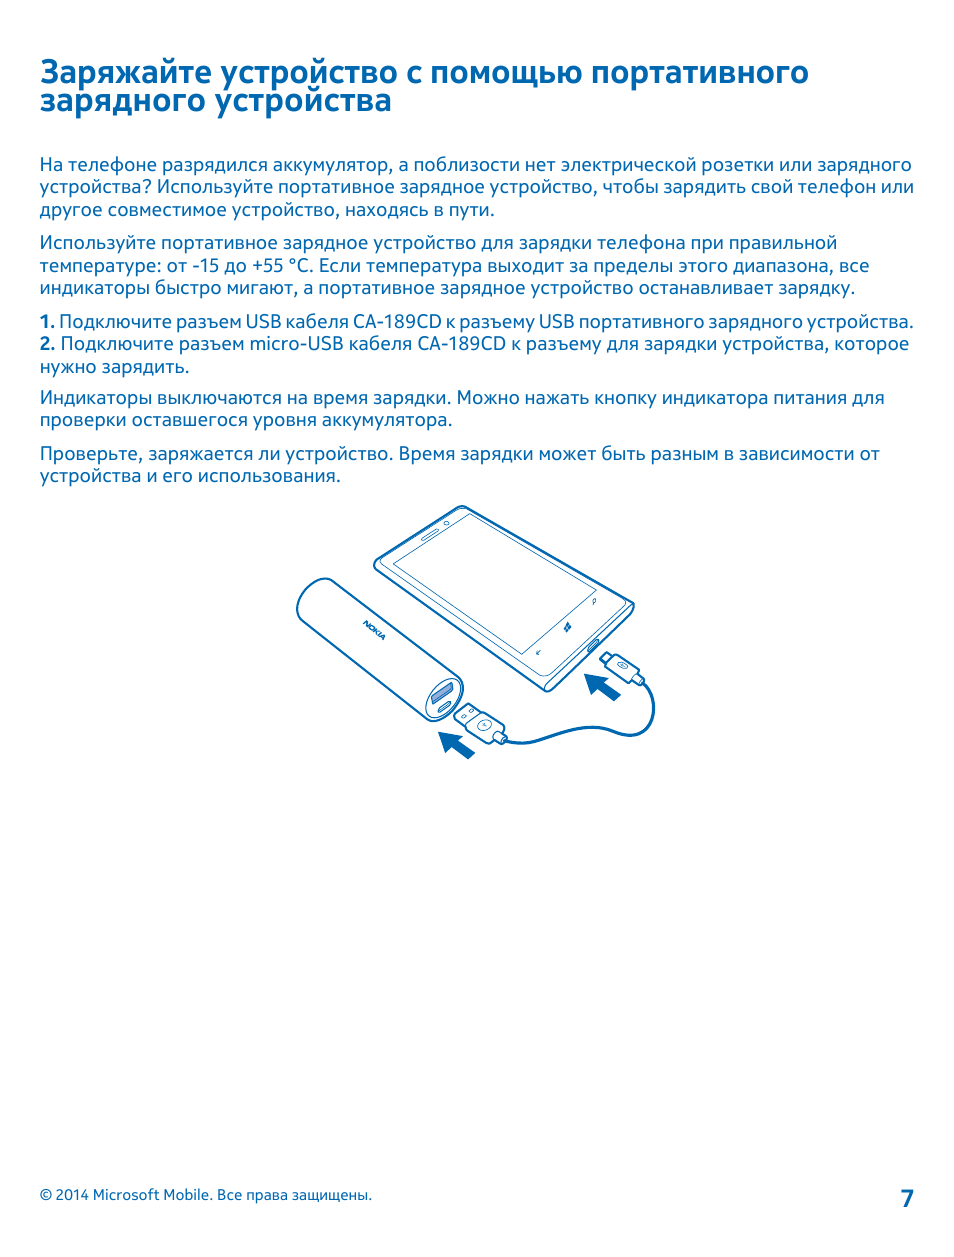 Заряжайте устройство с помощью, Портативного зарядного устройства | Инструкция по эксплуатации Nokia DC-19 | Страница 7 / 11